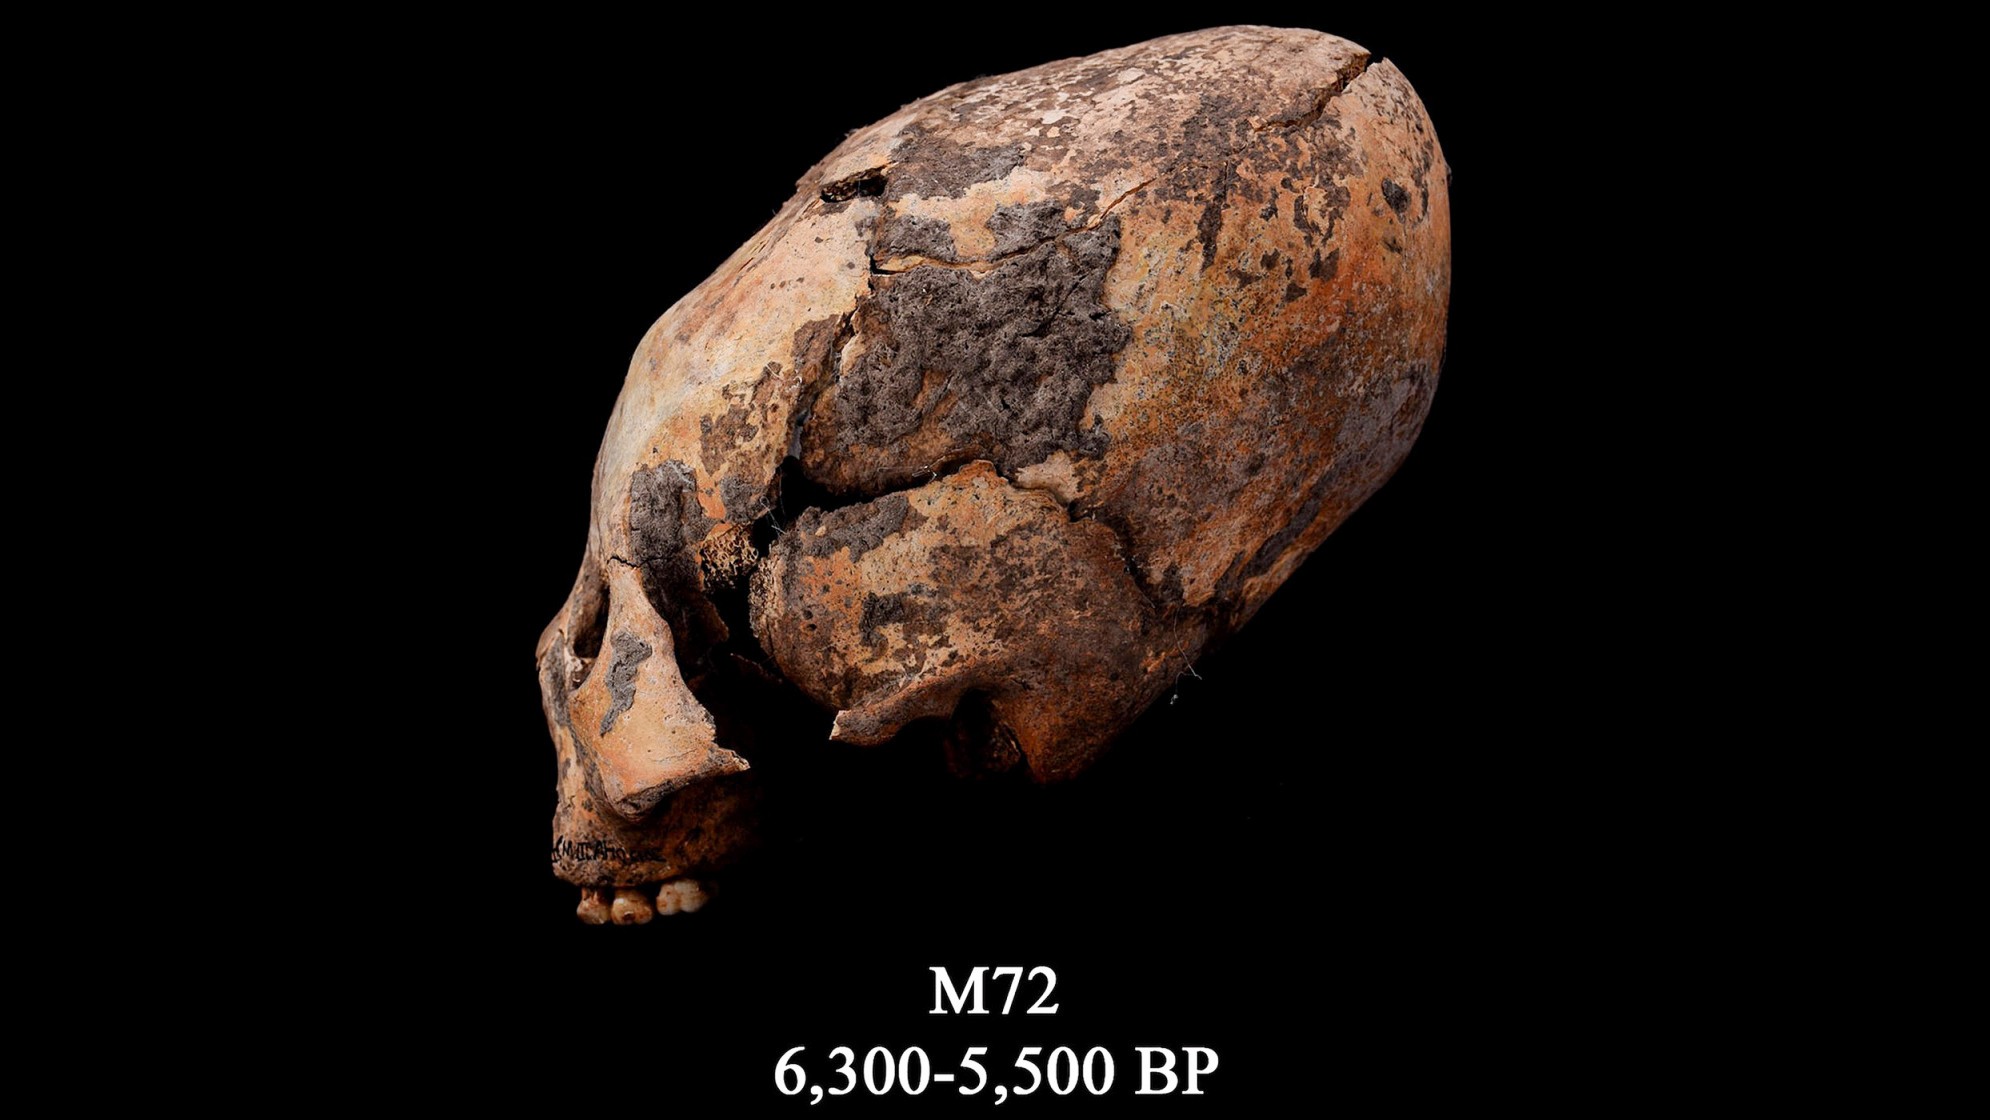 Черепът, известен като M72. Този преоформен човешки череп е намерен в североизточен Китай и е умишлено модифициран